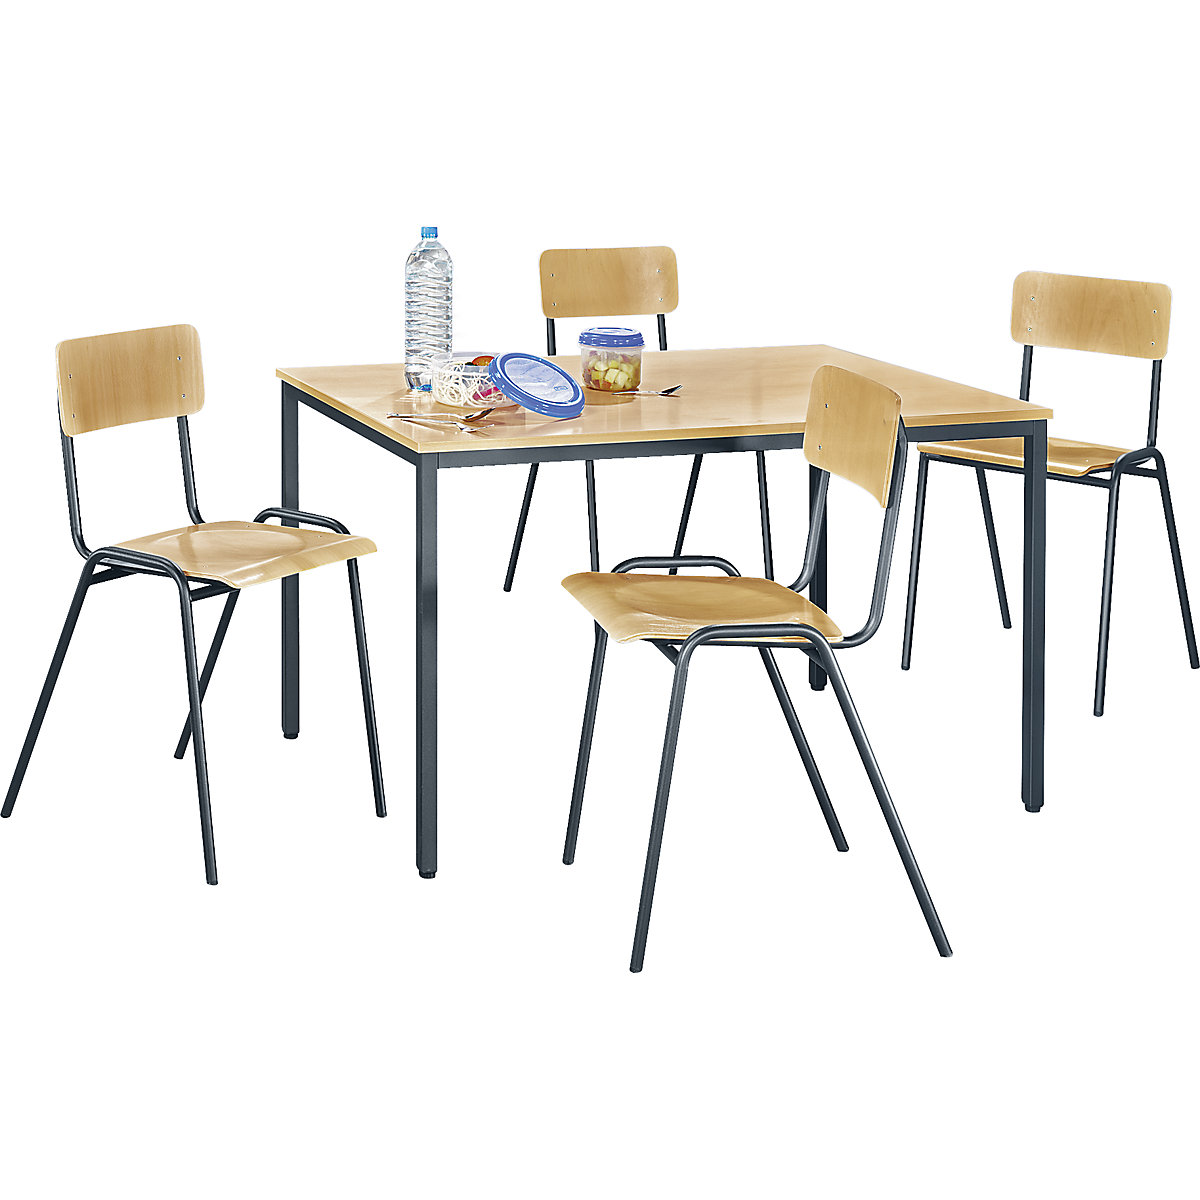 EUROKRAFTbasic – Uniwersalny zestaw mebli do siedzenia, 1 stół, 4 krzesła, blat: imit. buku, szkielet bazaltowo-szary